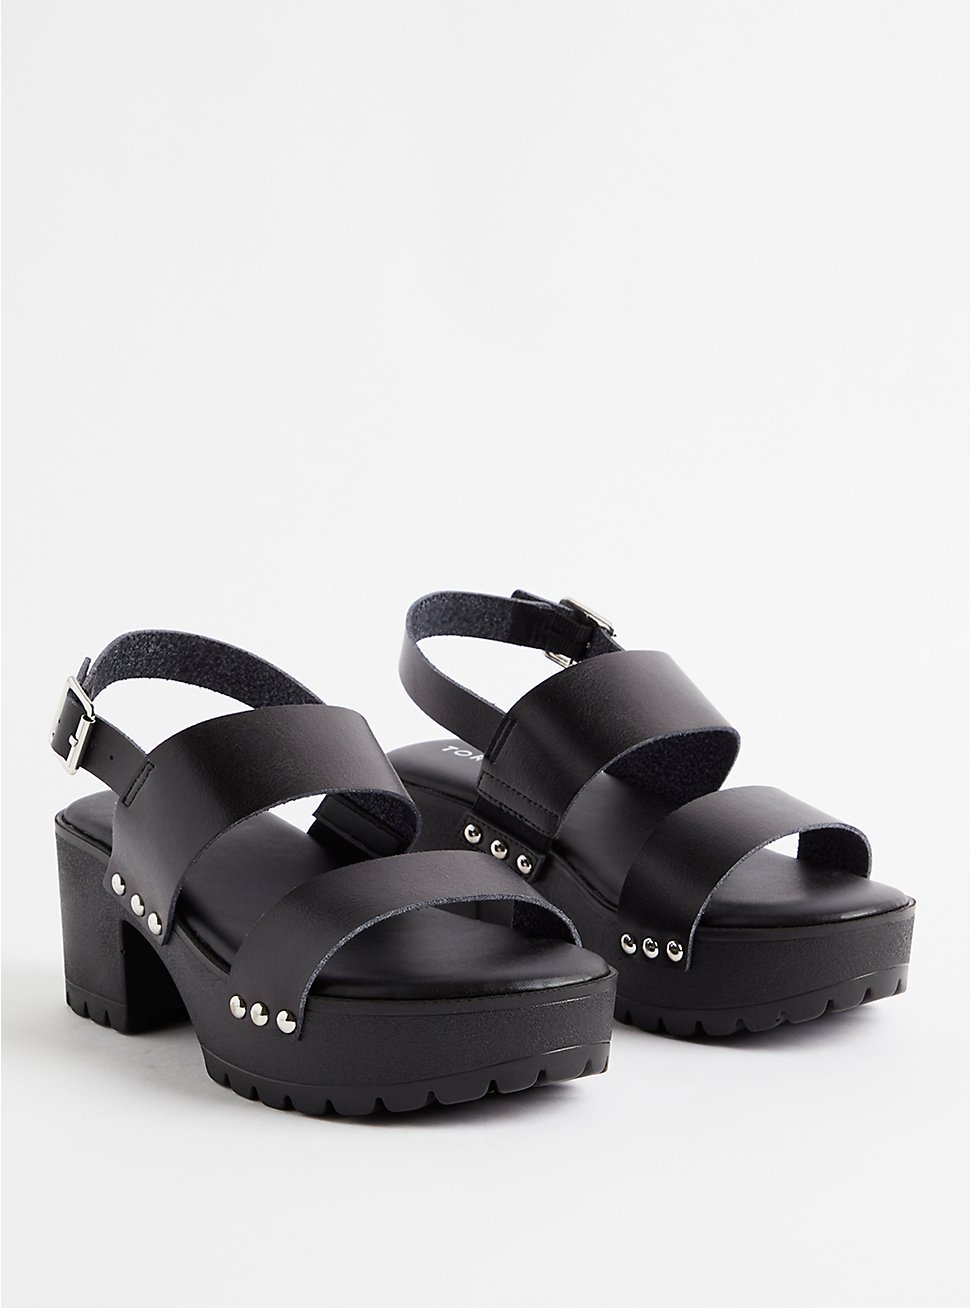 Plus Size Double Band Heel Shoe - Faux Leather Black (WW), BLACK, hi-res